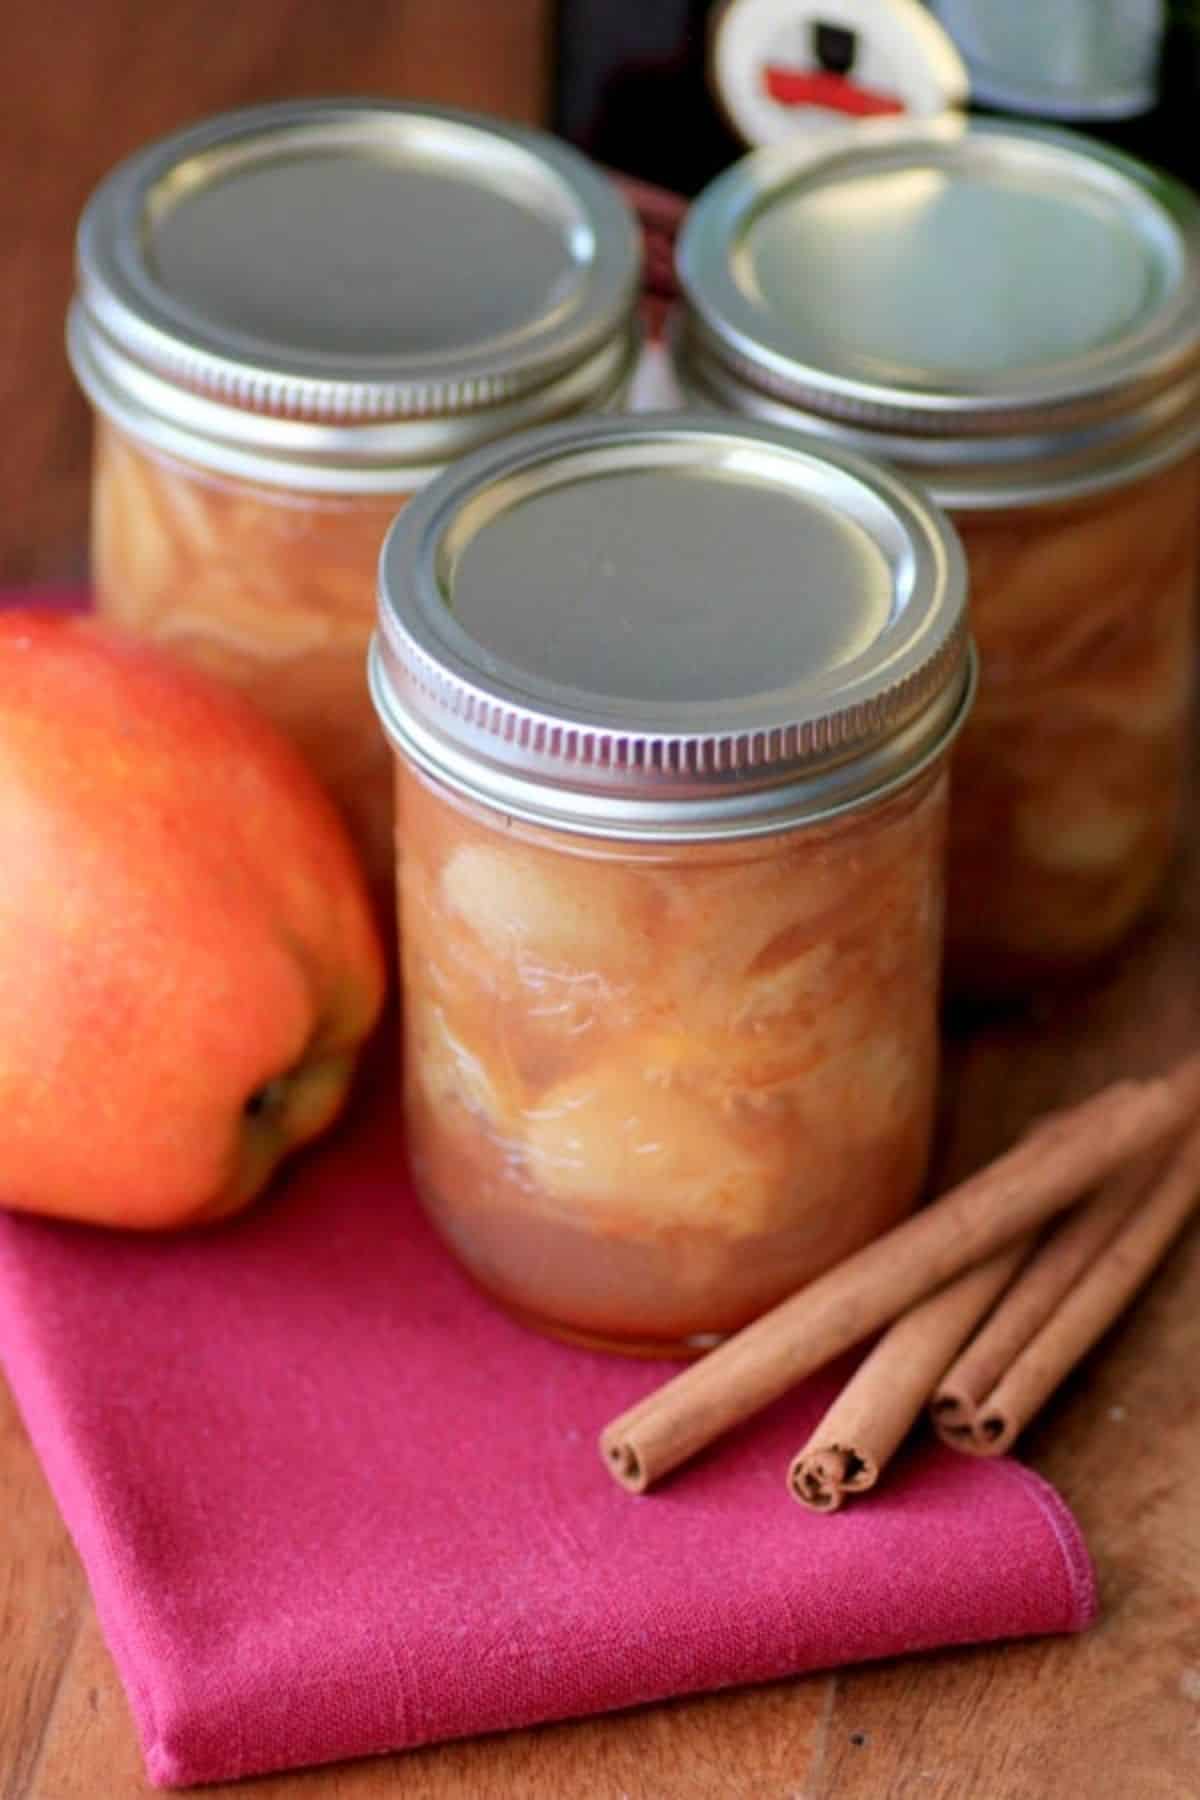 Brandied cinnamon apple preserves canned in three glass jars.